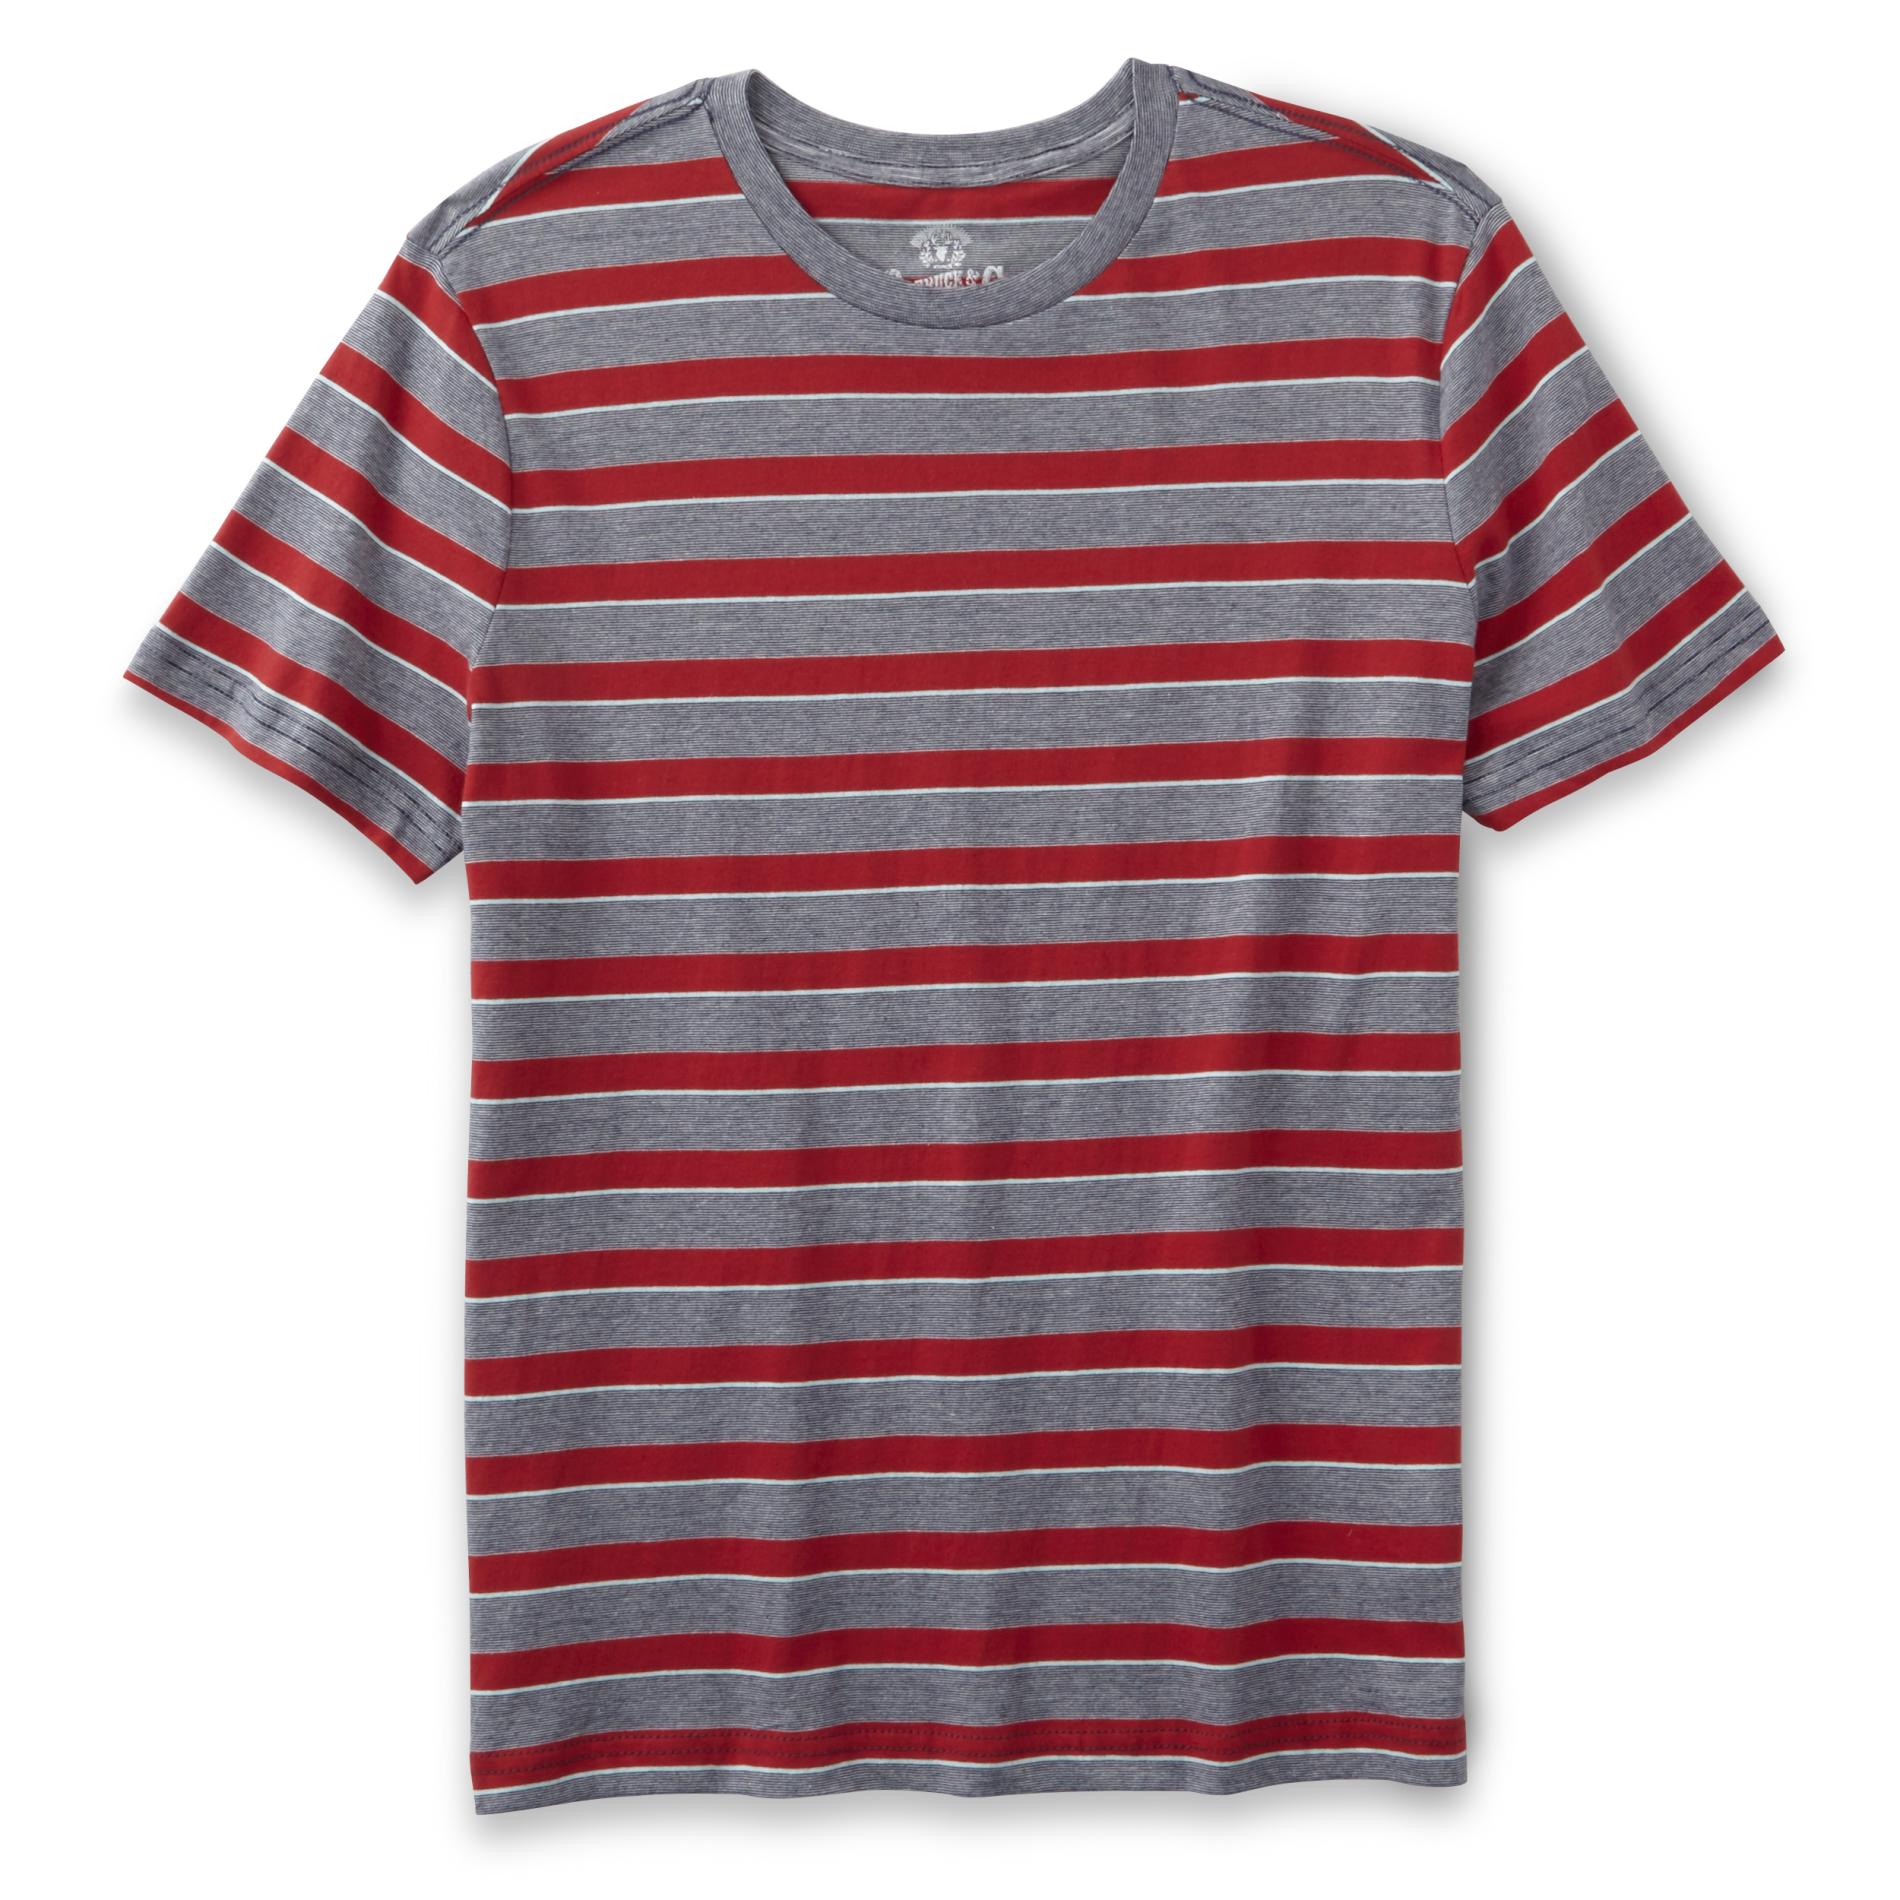 Roebuck & Co. Young Men's T-Shirt - Striped